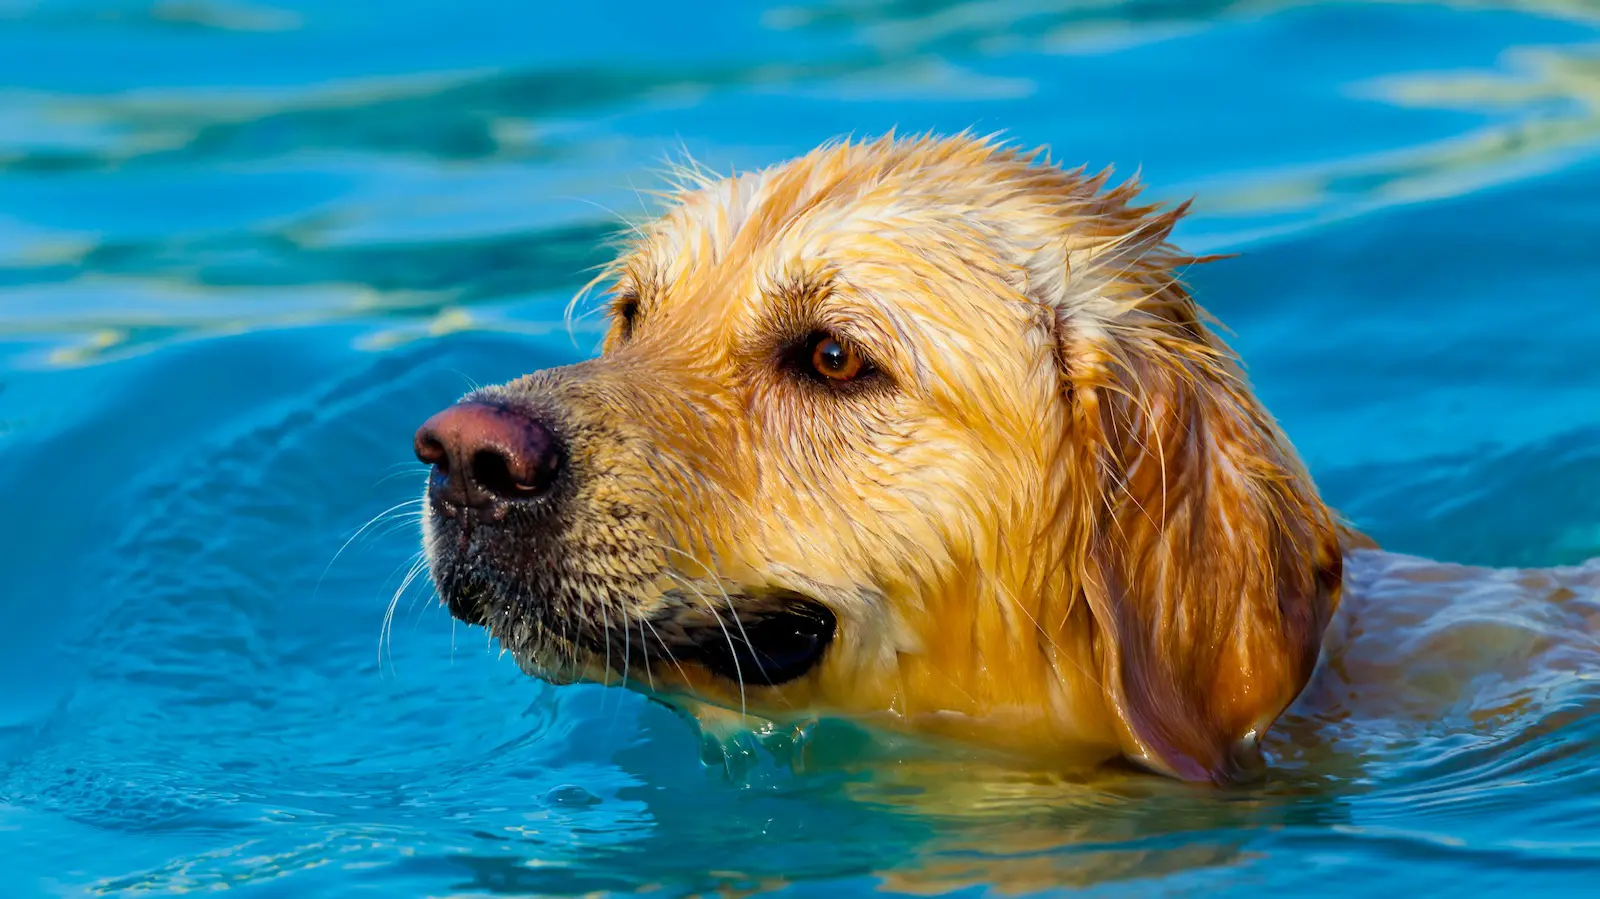 Can my dog swim in my fiberglass pool?